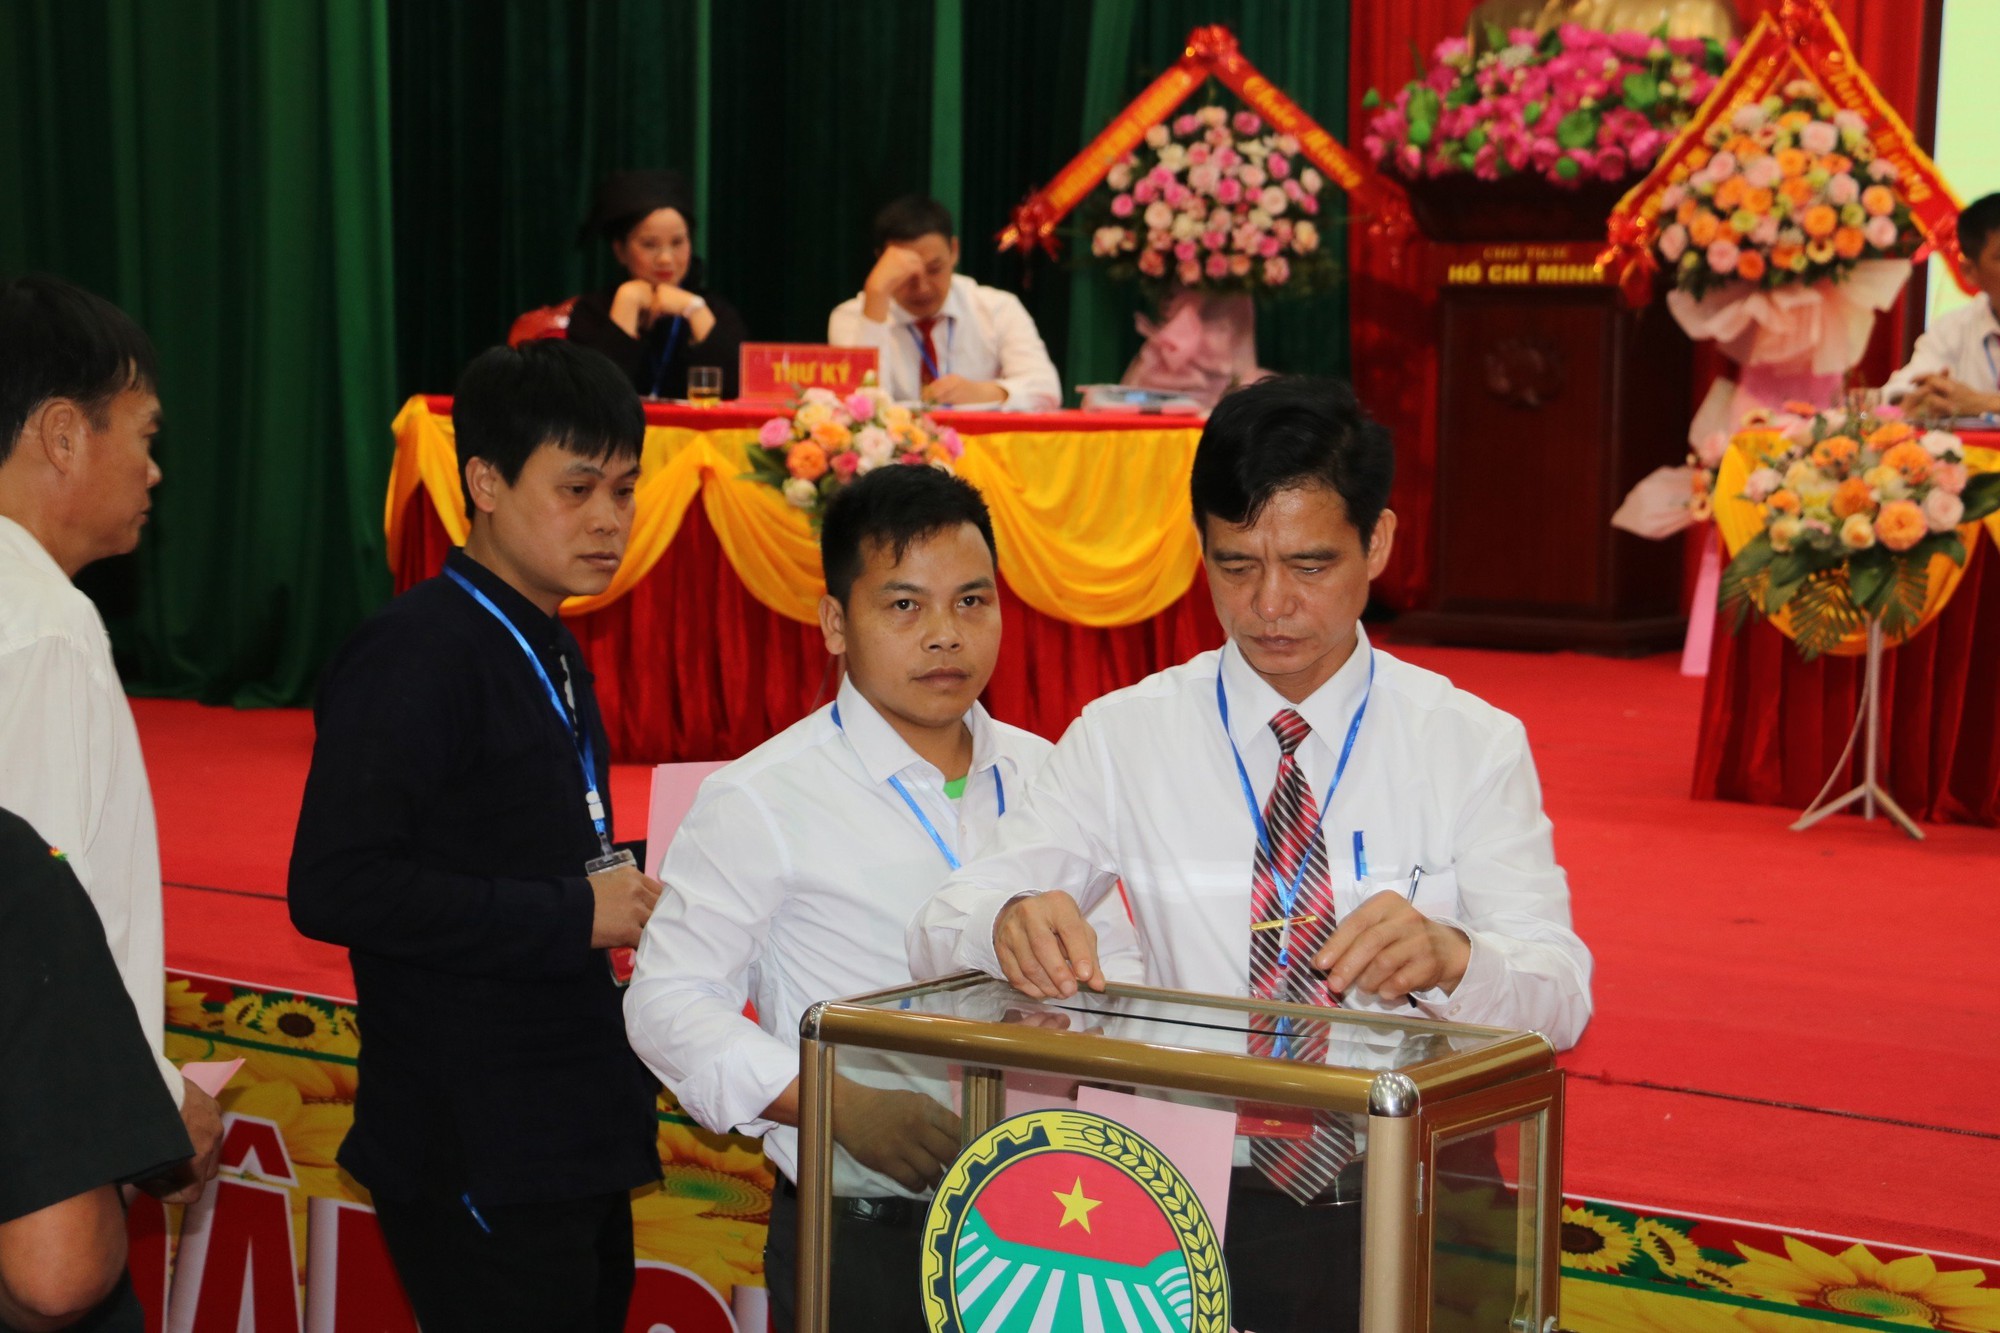 Bắc Sơn huyện đầu tiên tổ chức thành công đại hội điểm hội nông dân cấp huyện tỉnh Lang Sơn  - Ảnh 3.